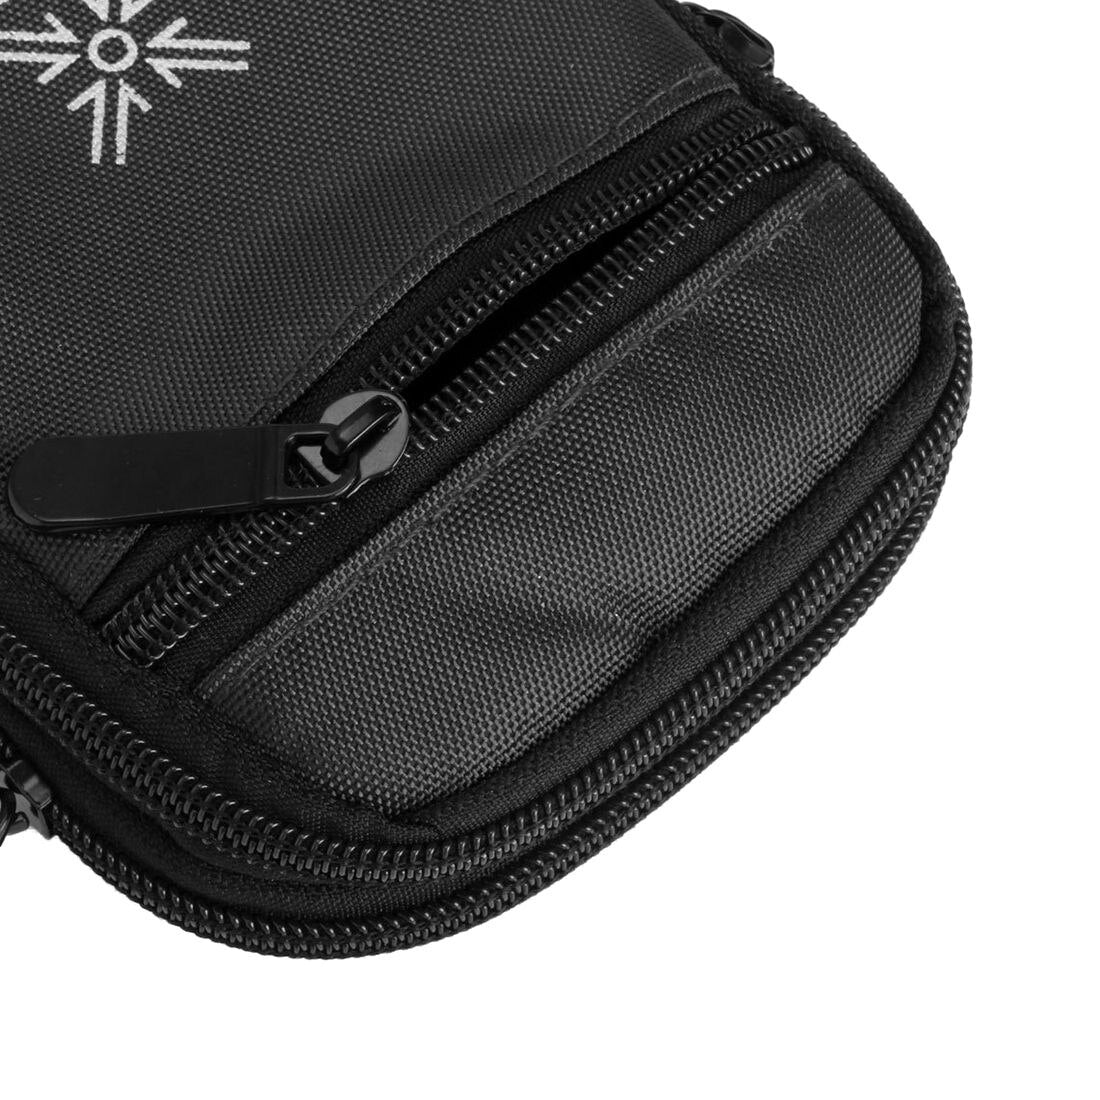 Outdoor Running Pack Waist Belt Phone Pouch Bag, Black - ebowsos